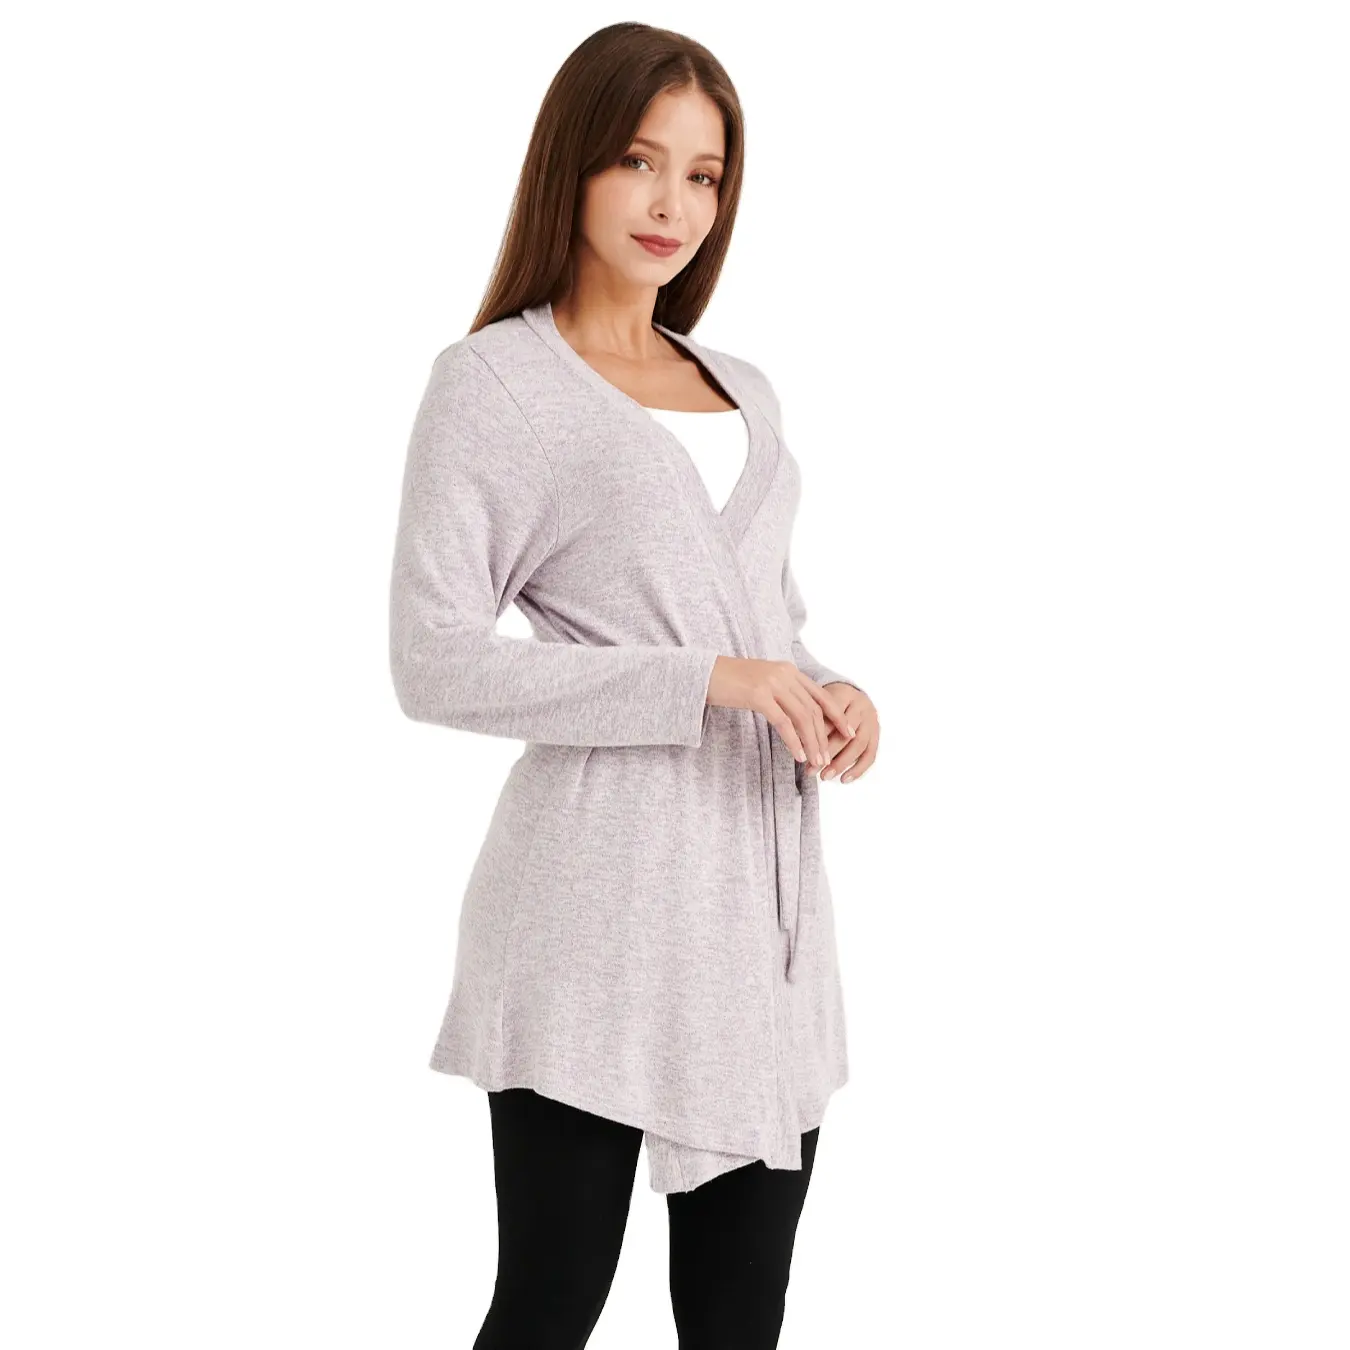 Beste Qualität Frauen Daily Ware Casual Damen Cardigan Sweater Baumwoll mischung Strick Stylish Cardigan Sweater zum Verkauf